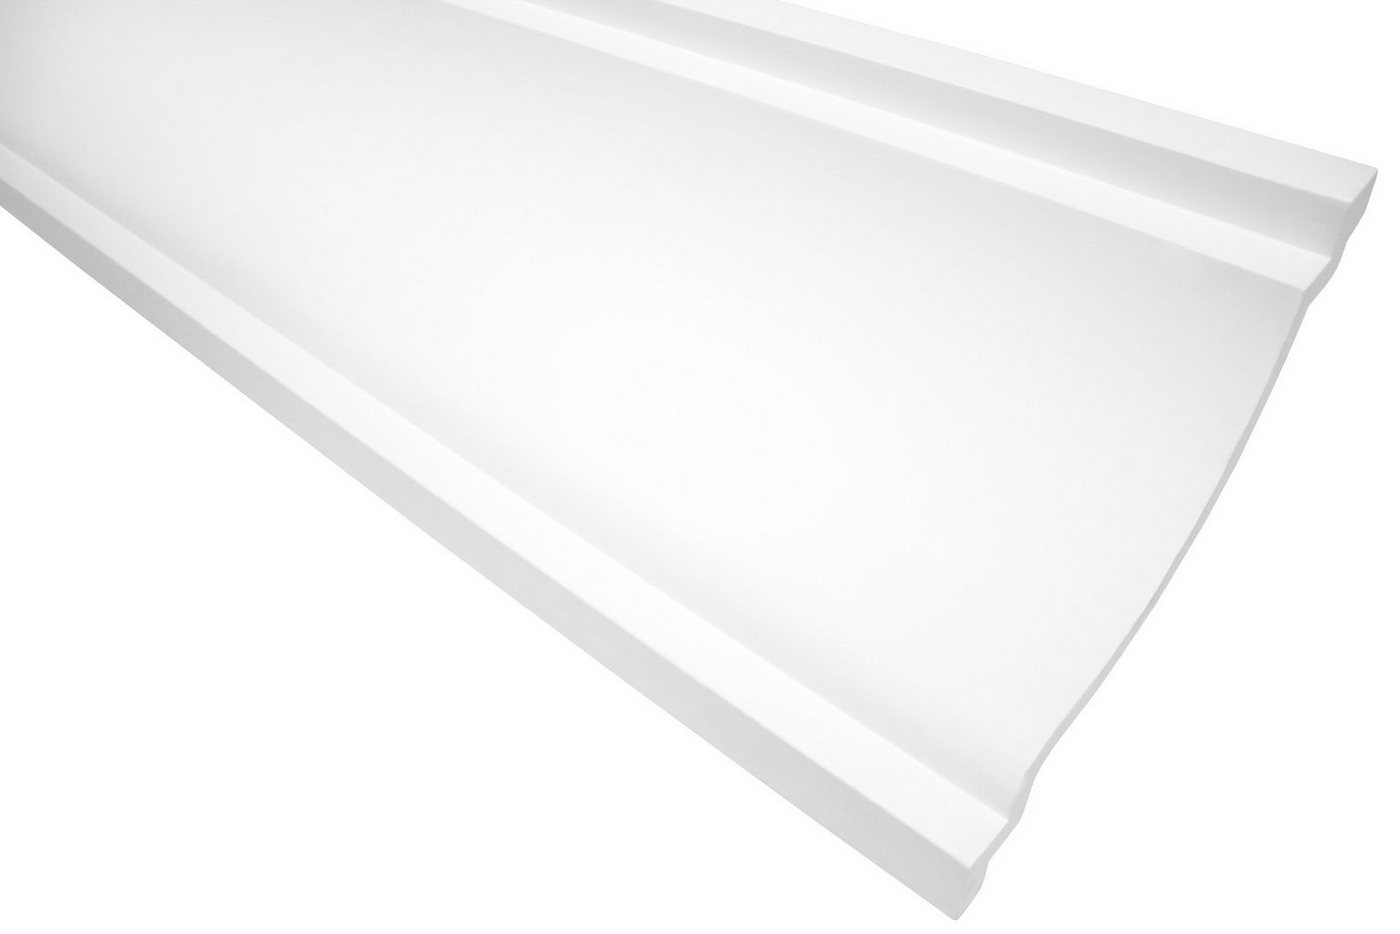 Hexim Stuckleiste P831, 2 Meter / 1 Leiste, Stuckleisten Decke modern, PU Hartschaum weiß - 2m Deckenleisten glatt Eckleisten Polyurethan Kunststoff Stuck (2 Meter) von Hexim